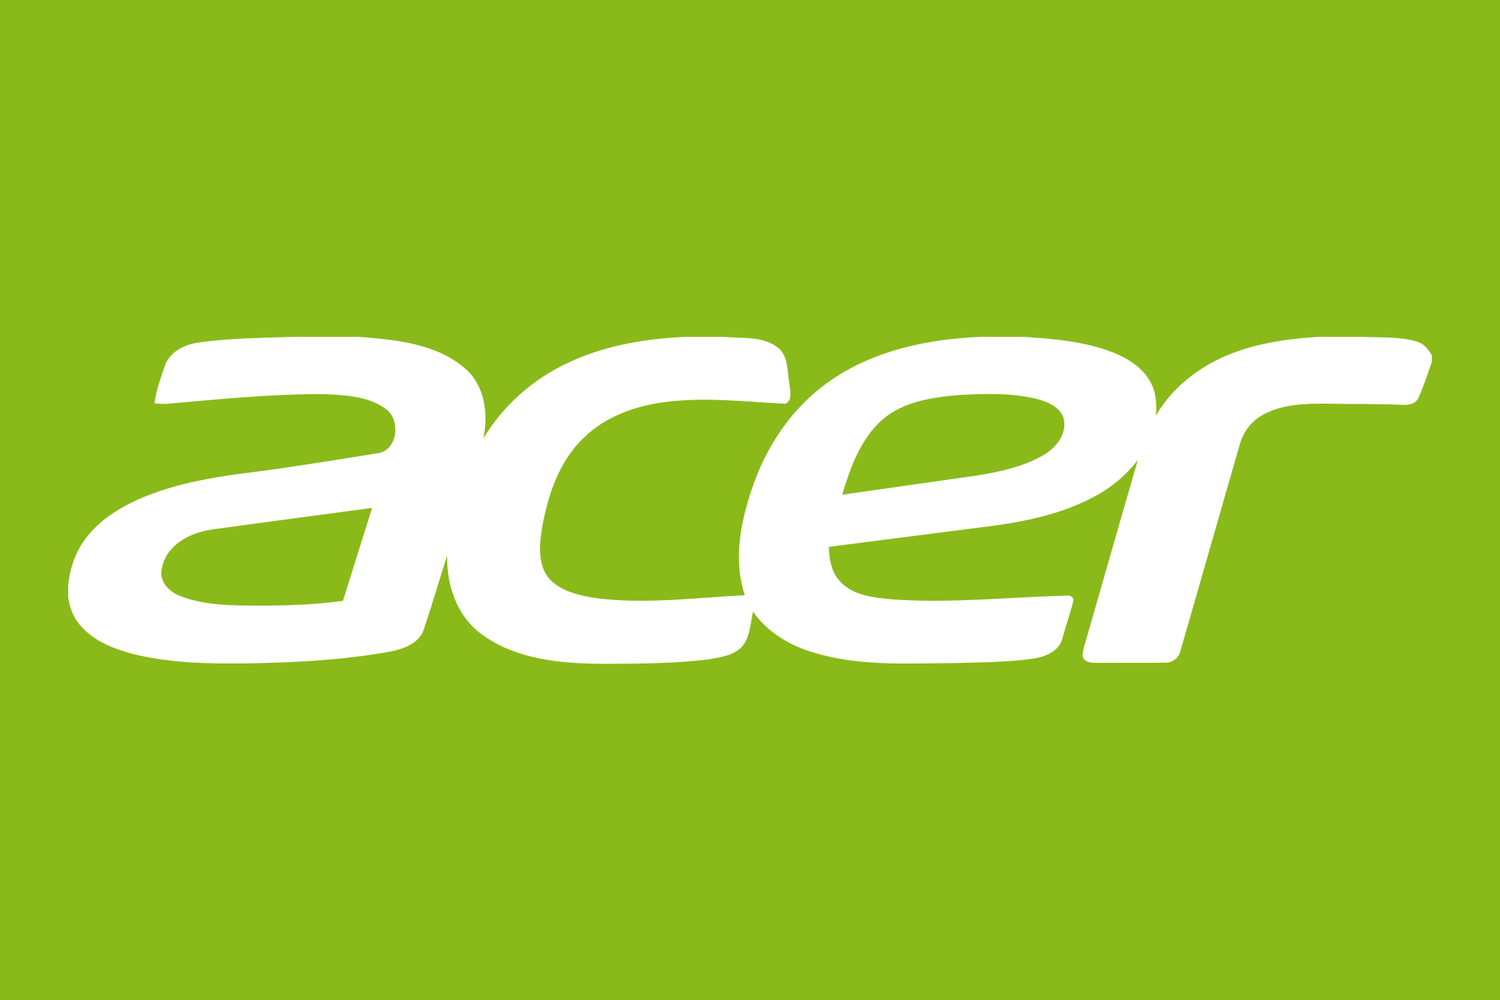 شركة Acer